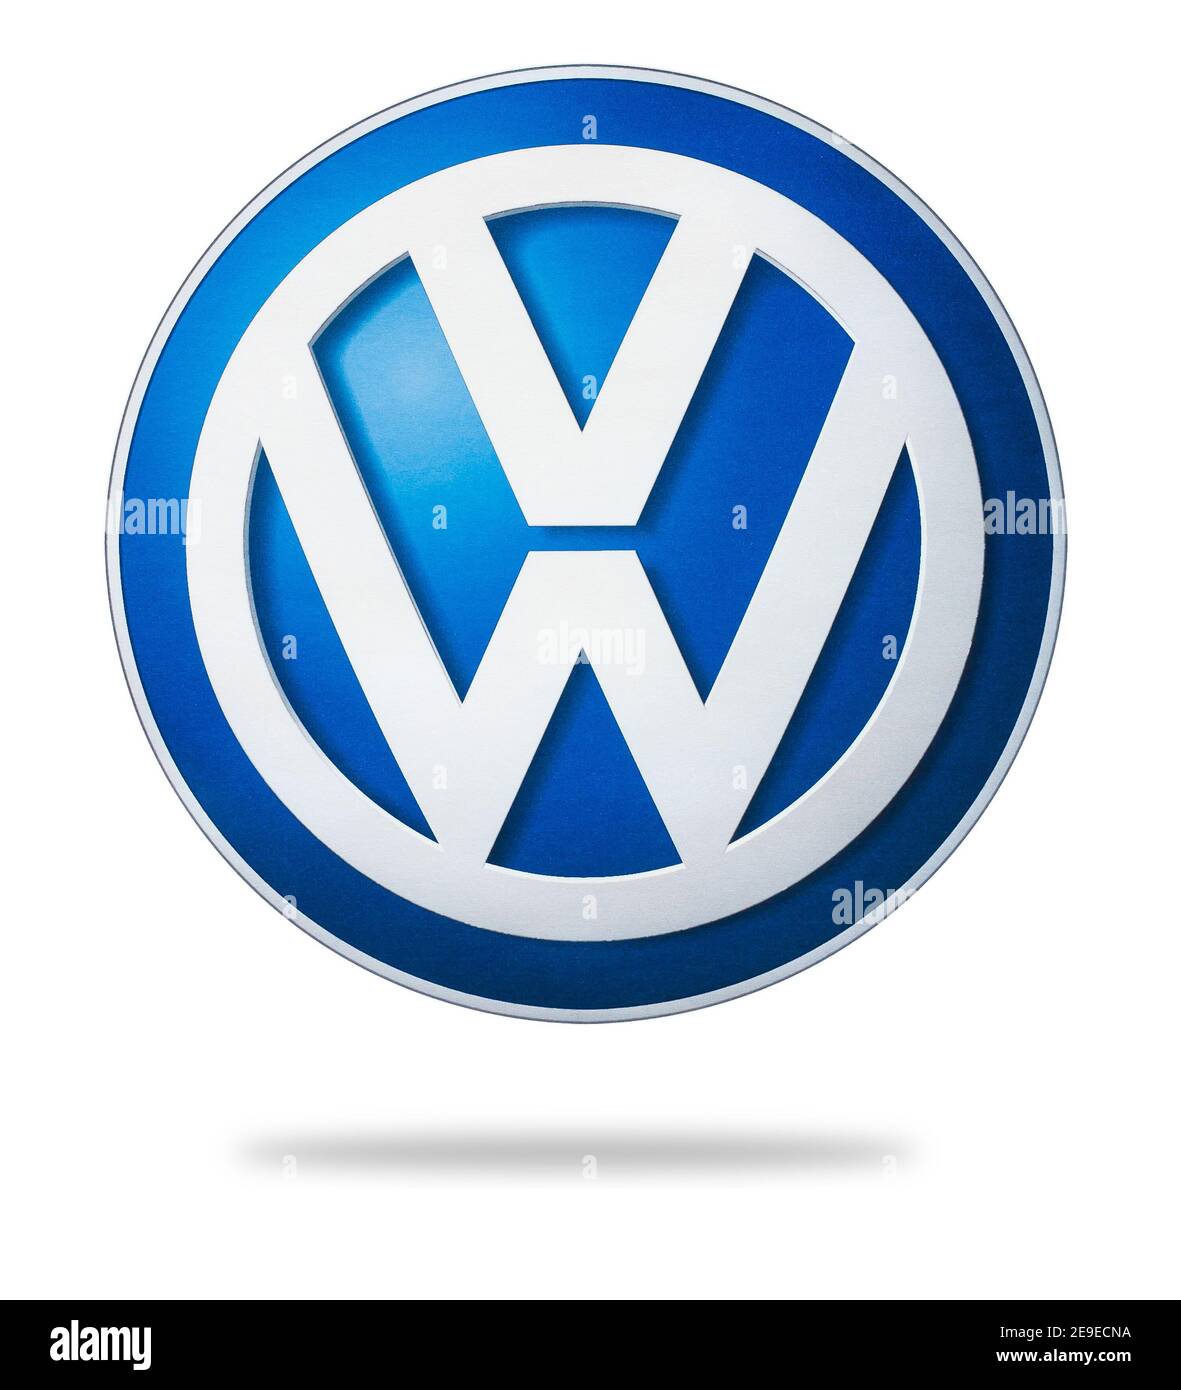 Foto del logo Volkswagen stampato su carta. Volkswagen è un produttore tedesco di automobili con sede a Wolfsburg Foto Stock